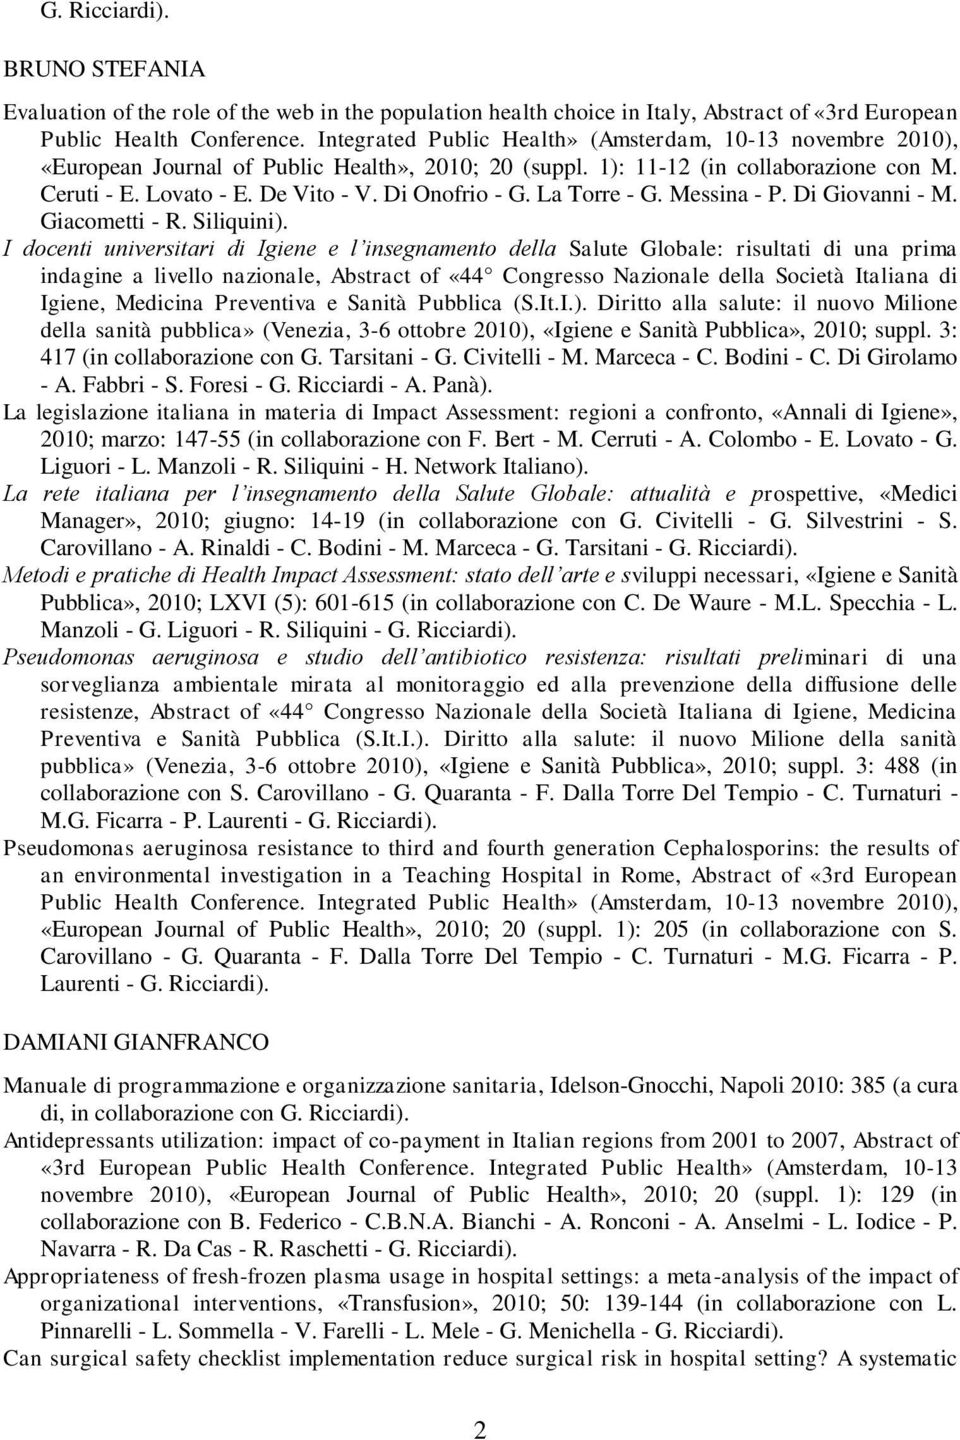 Di Onofrio - G. La Torre - G. Messina - P. Di Giovanni - M. Giacometti - R. Siliquini).